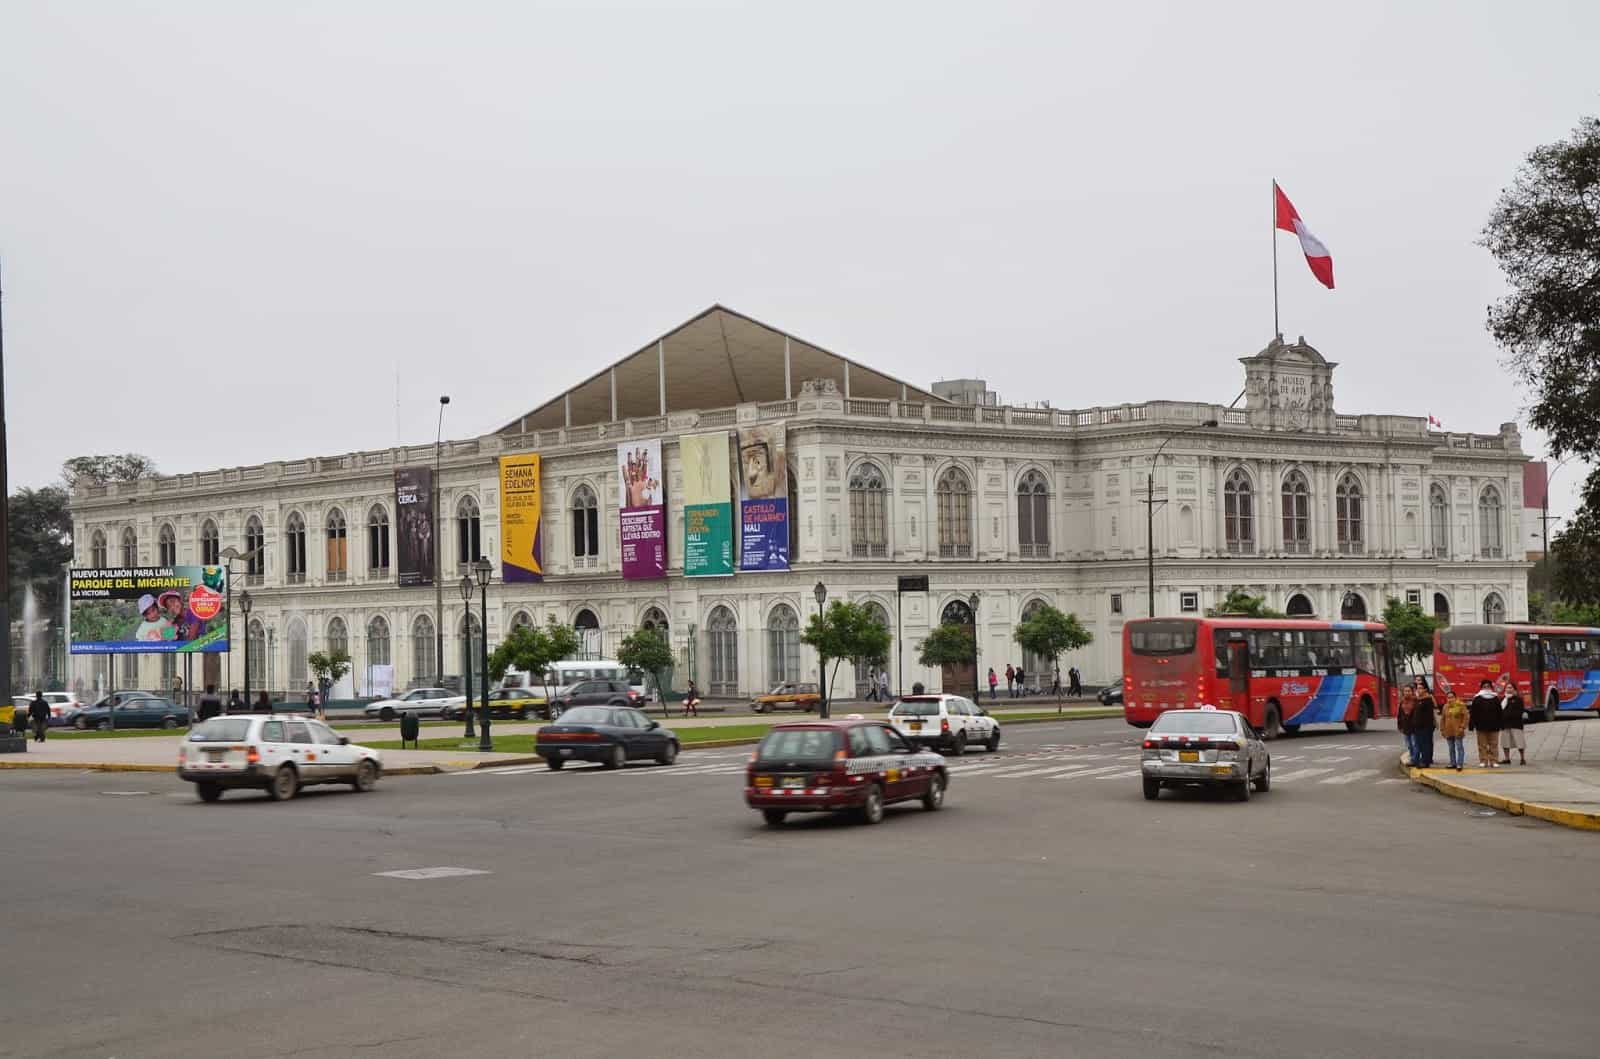 Lima Art Museum at Plaza Grau in Lima, Peru